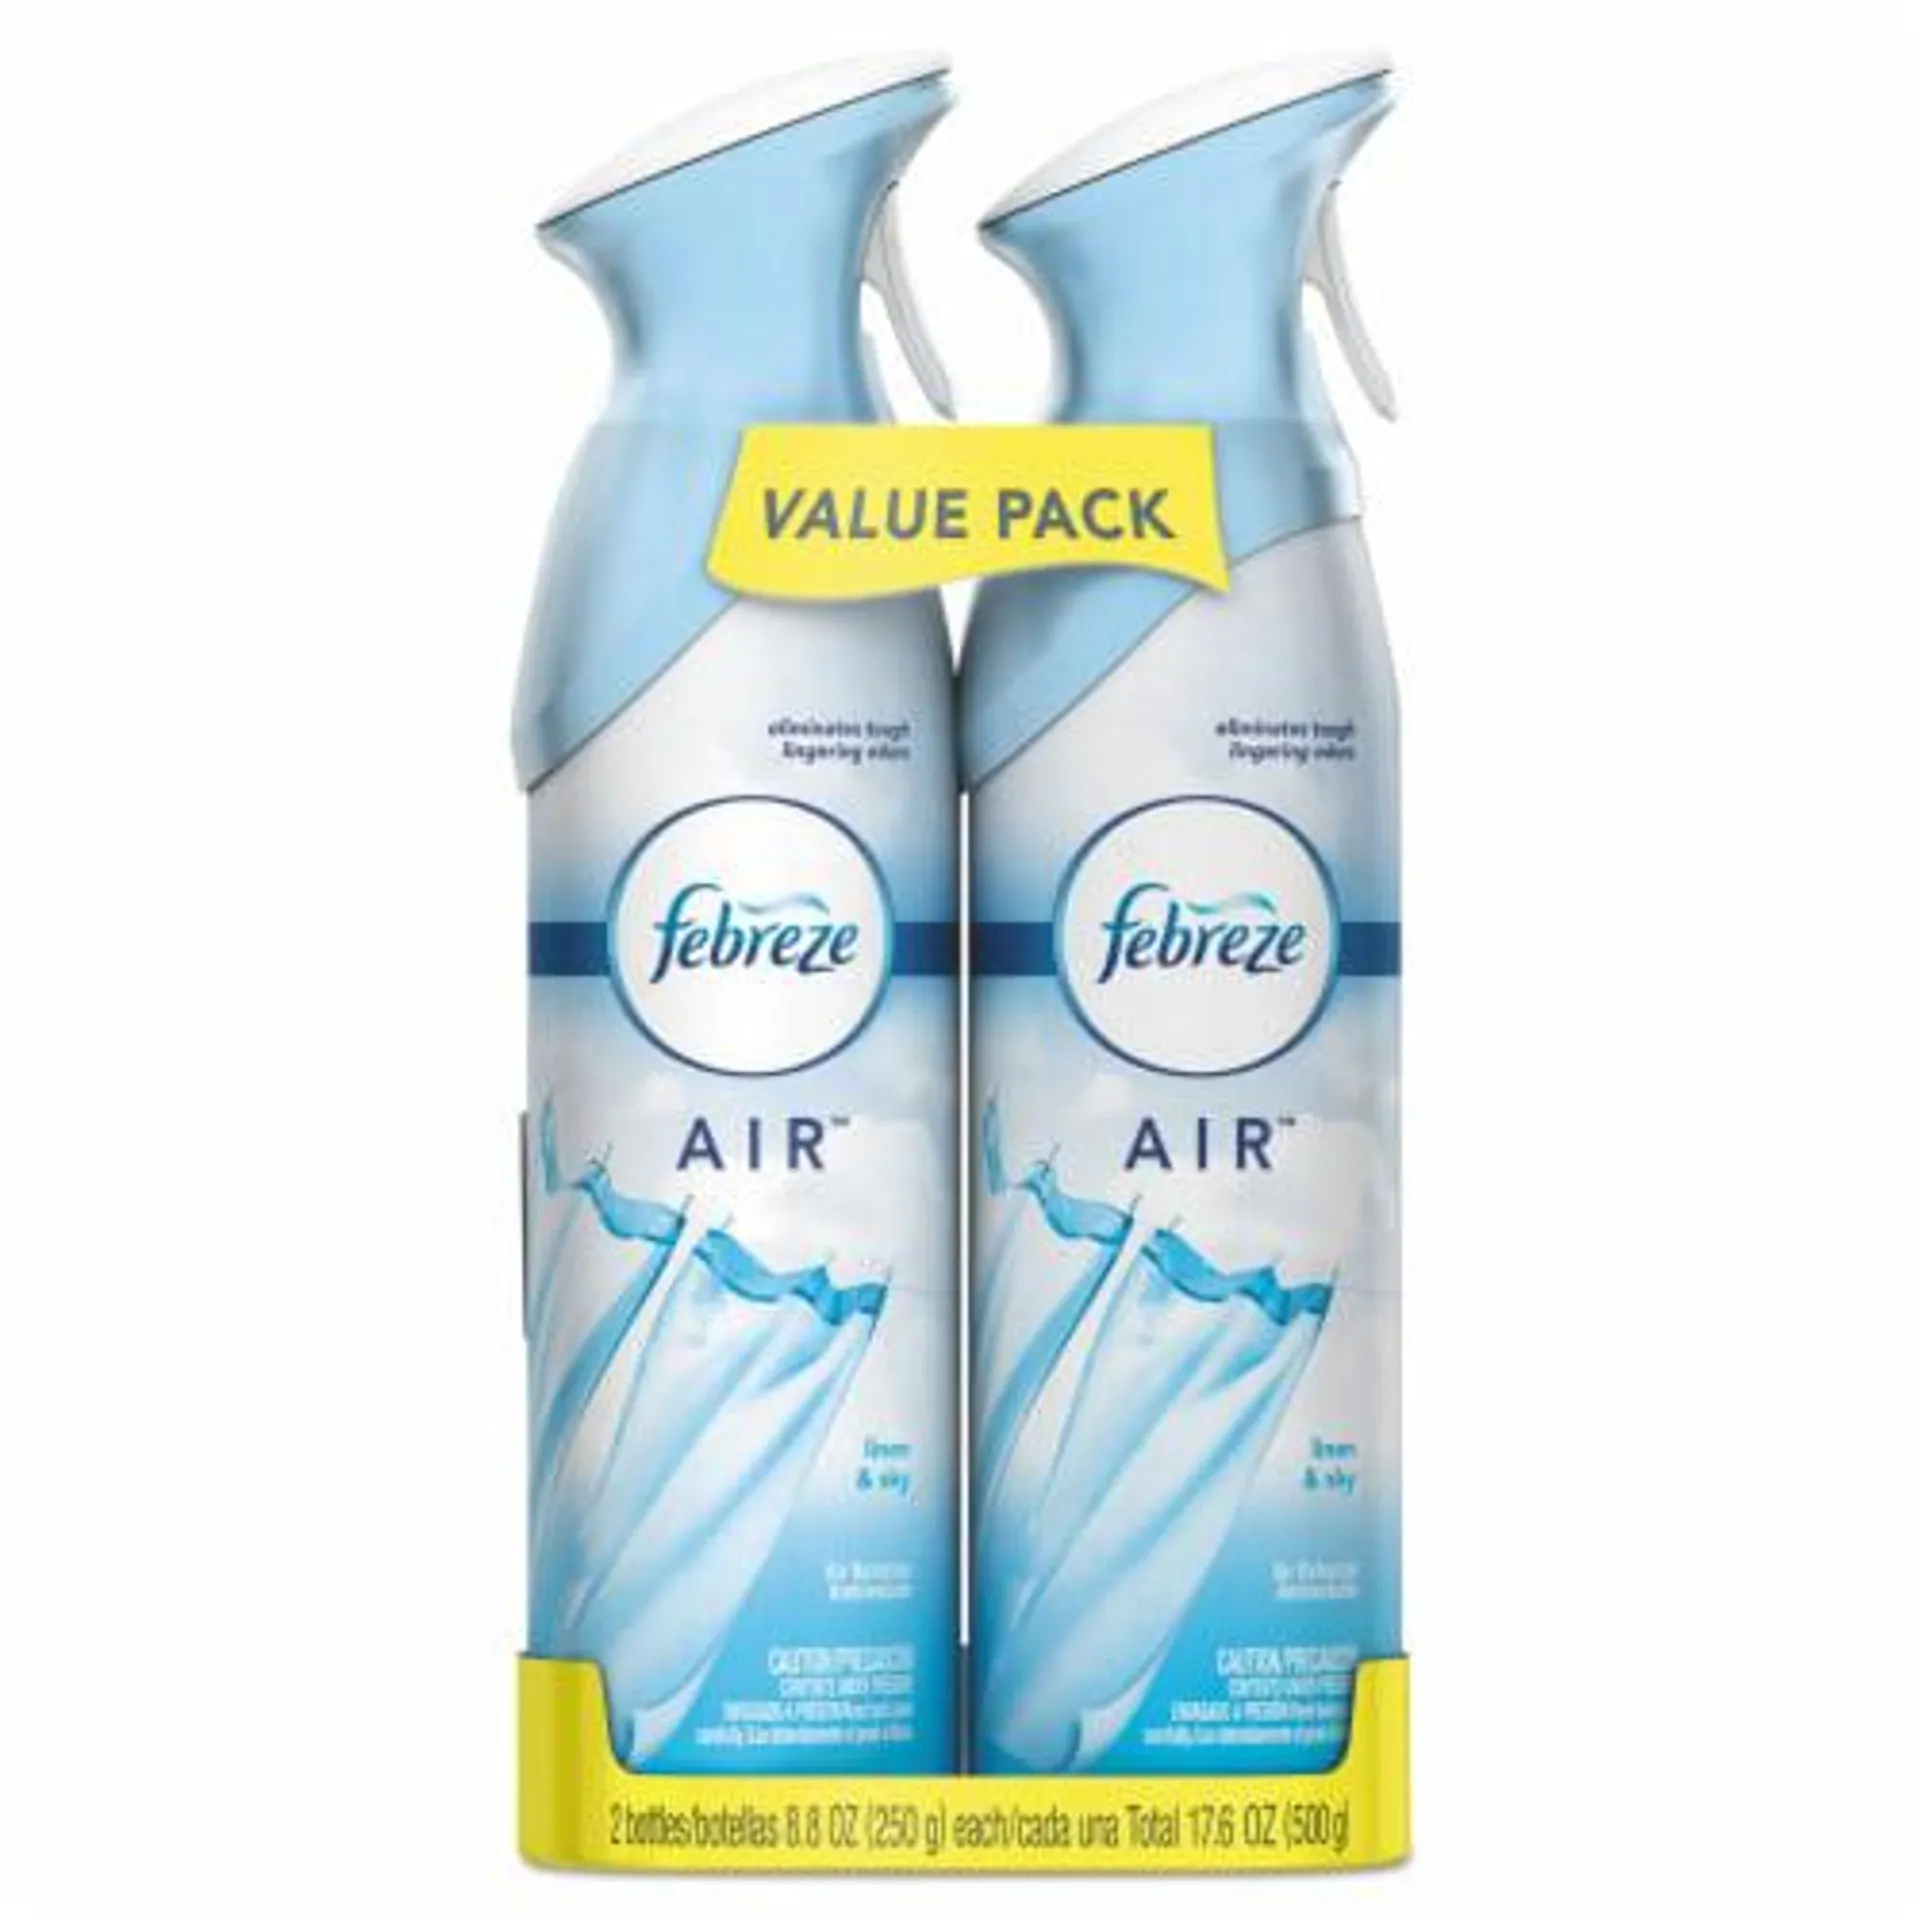 Febreze AIR Linen & Sky Odor-Eliminating Air Freshener Value Pack